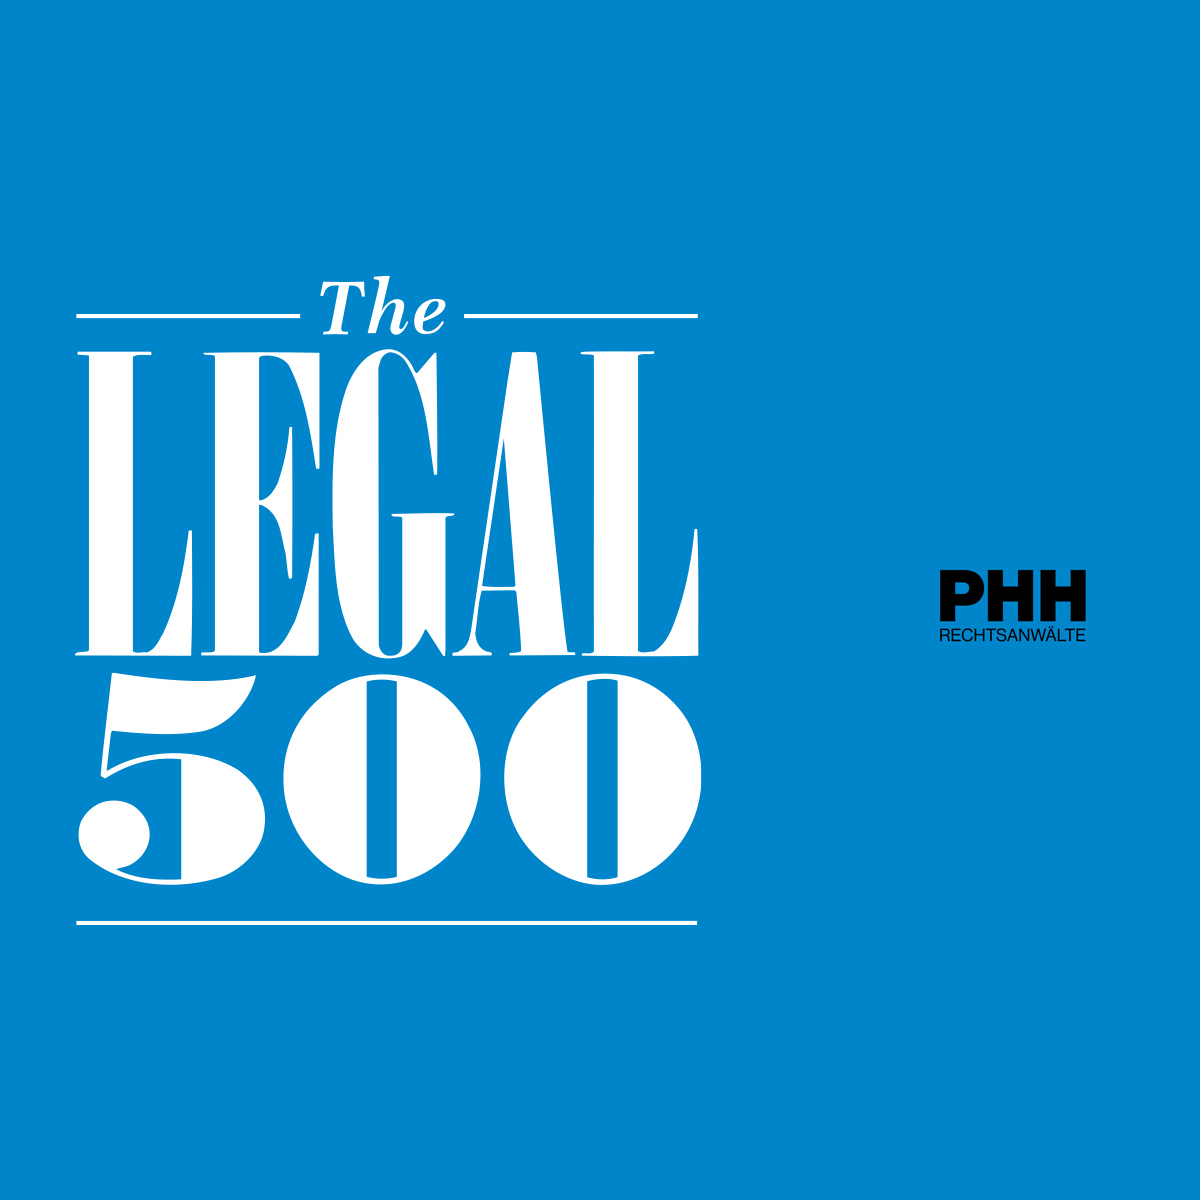 PHH Rechtsanwält:innen mehrfach top gerankt im aktuellen Legal 500 Ranking